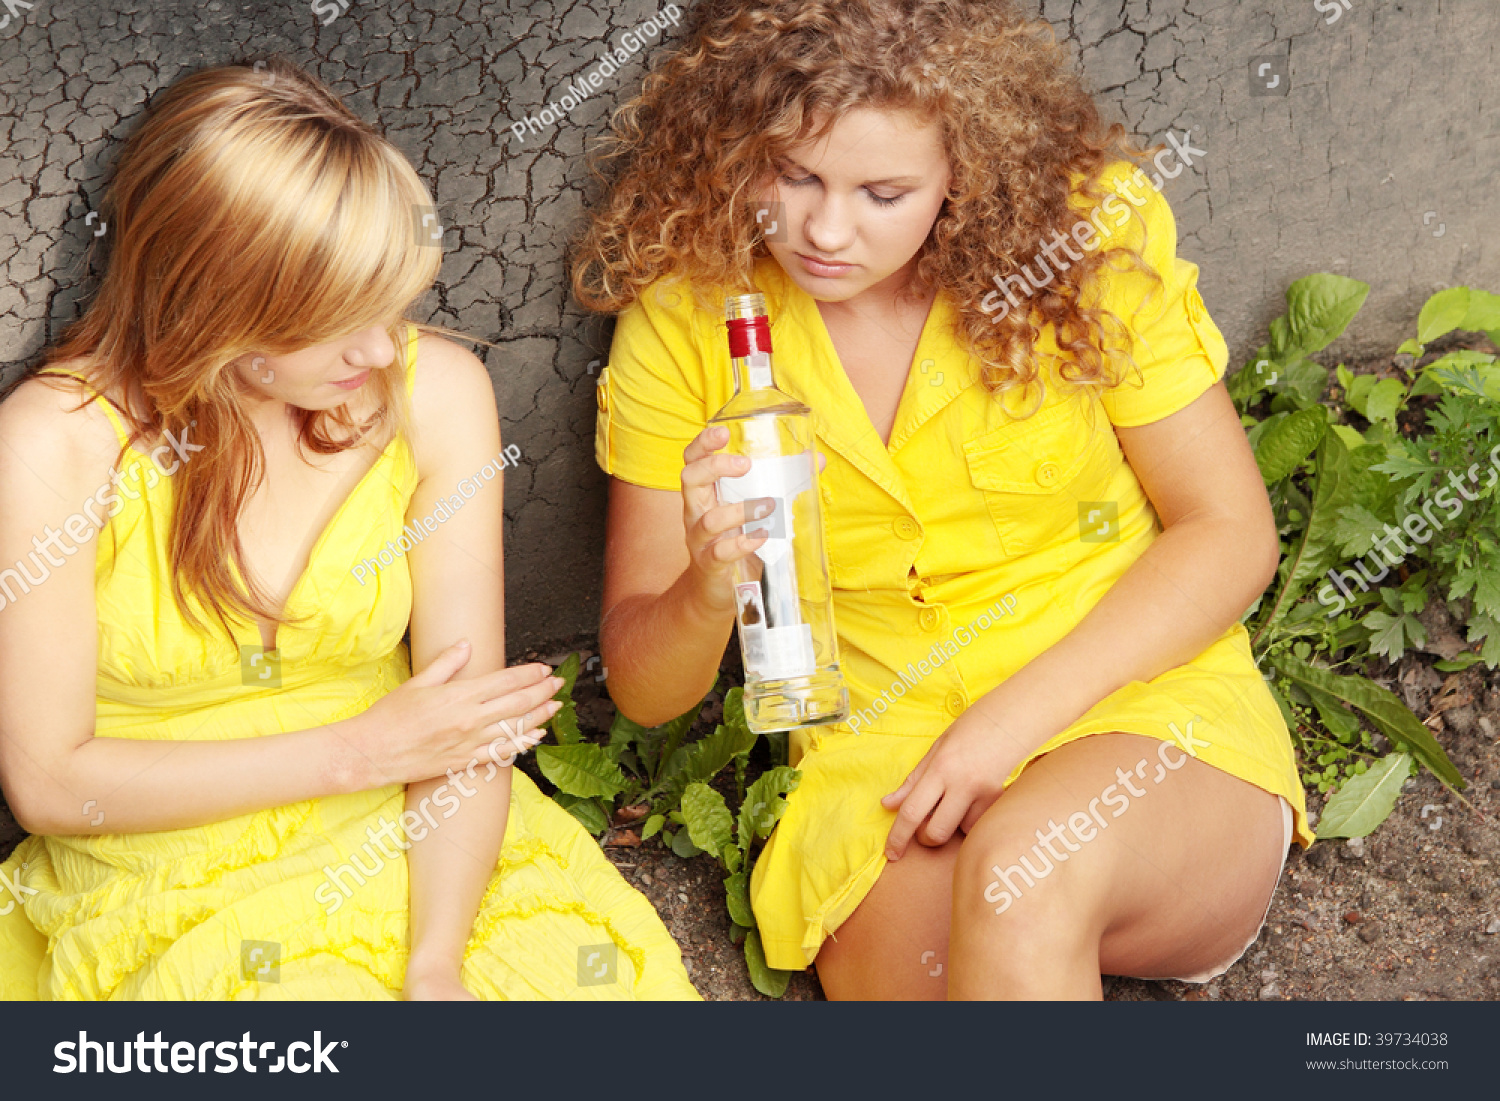 Drunk Teen Girls